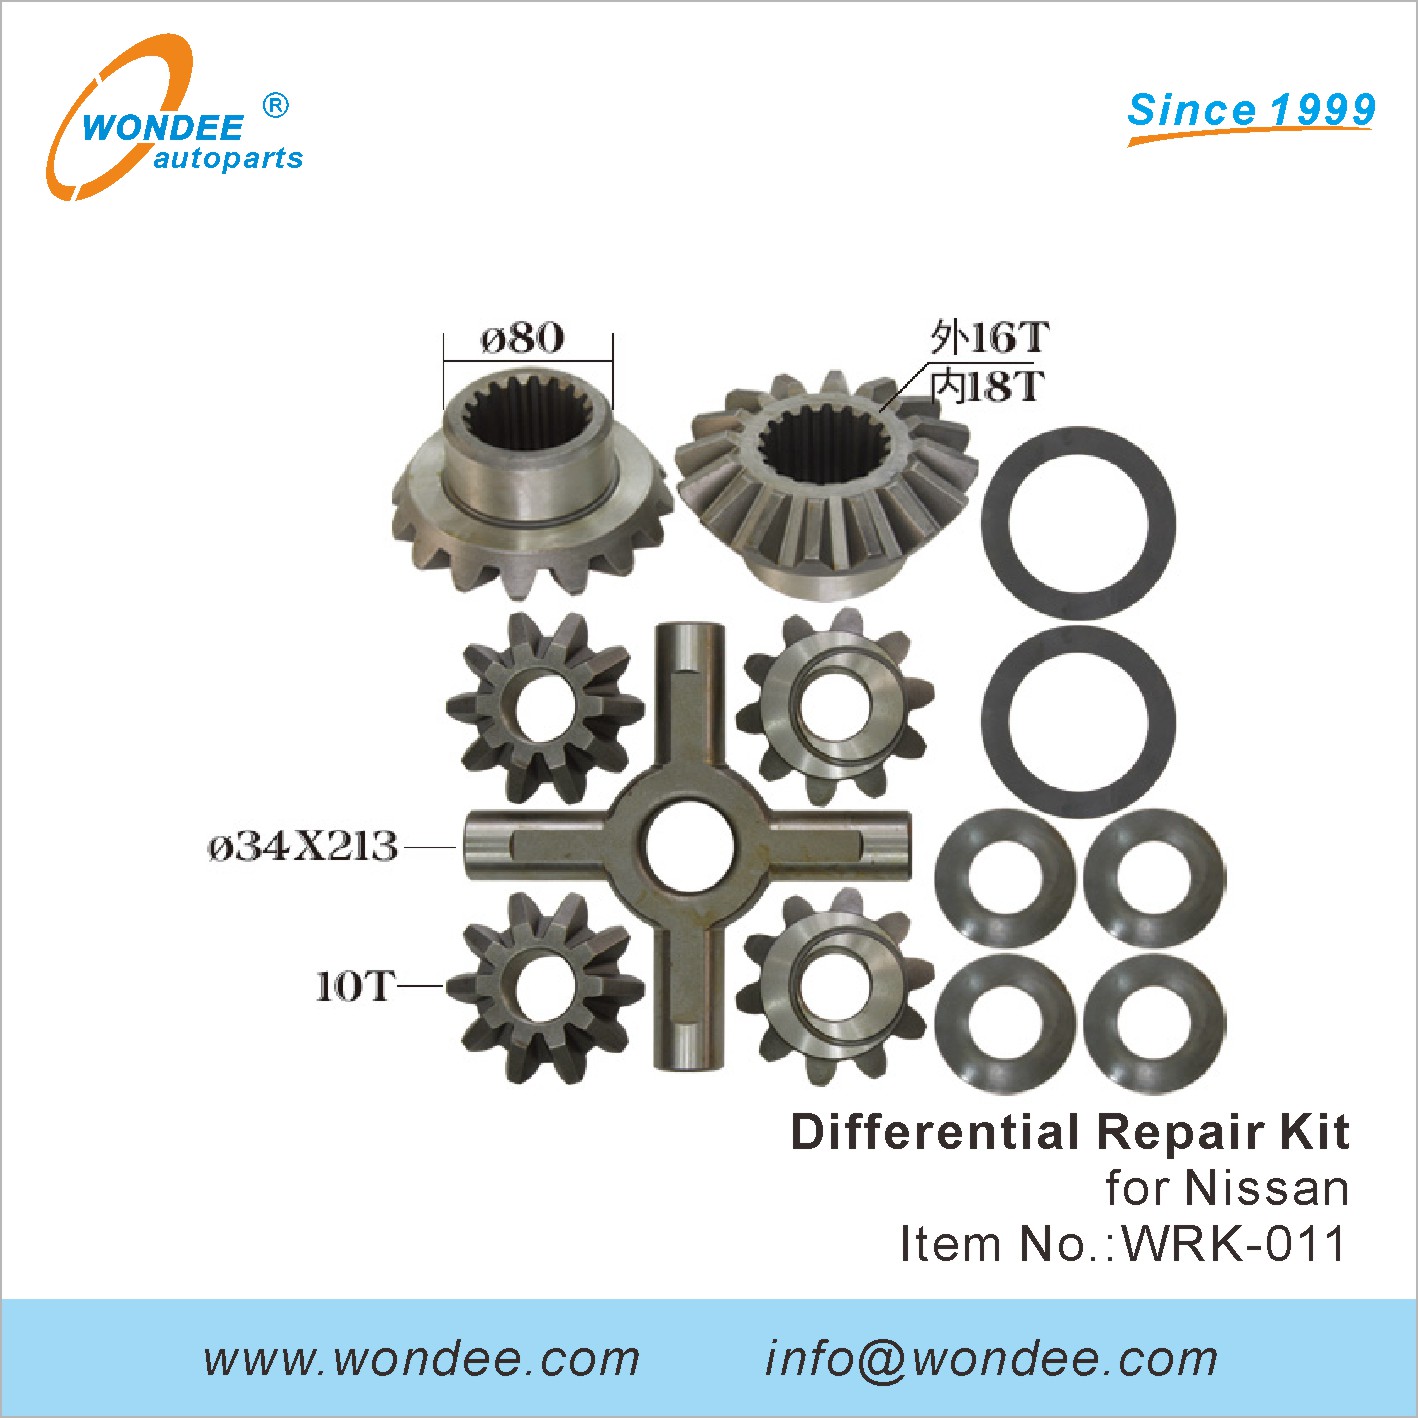 WONDEE differential repair kit (11)